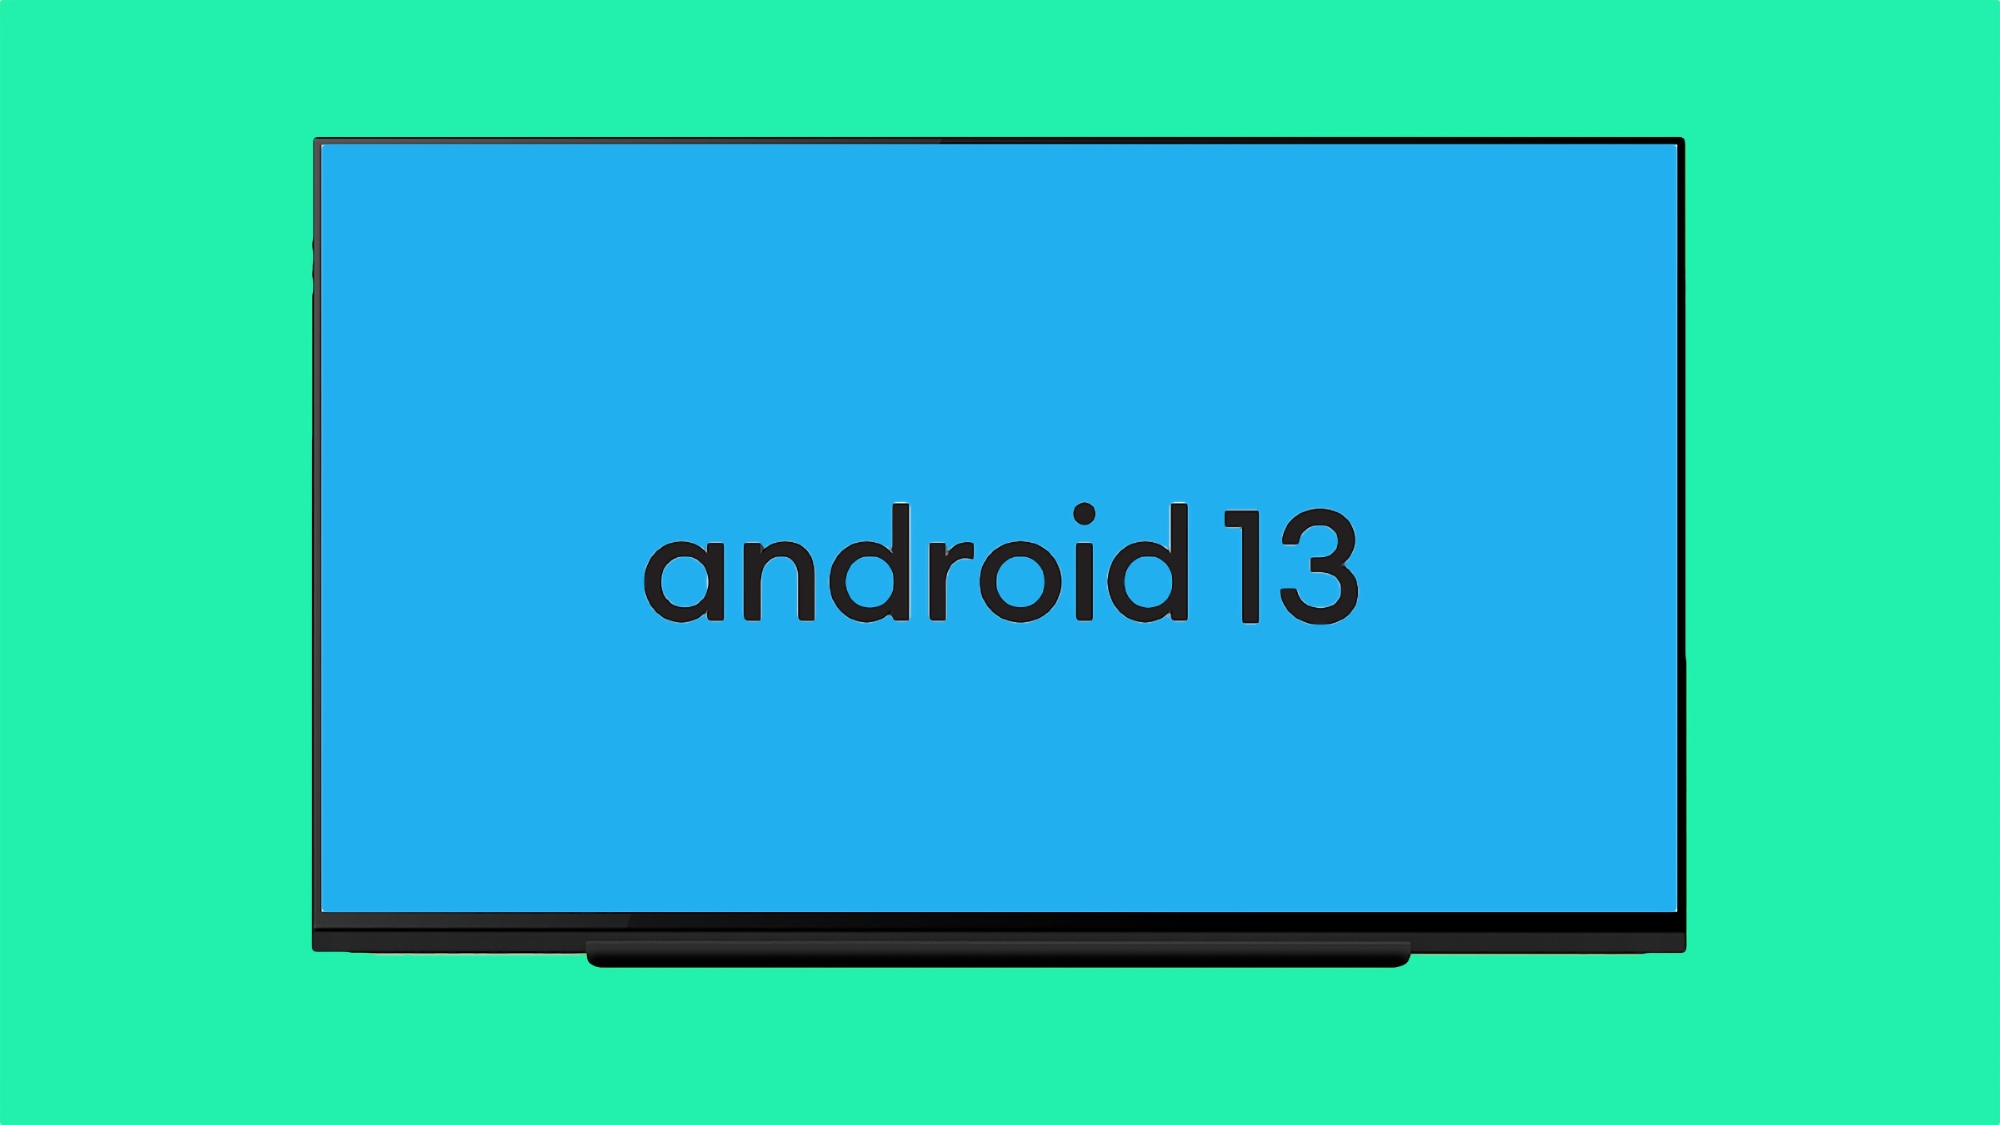 Google presentó Android 13 para Android TV con nuevas funciones y capacidades para los desarrolladores